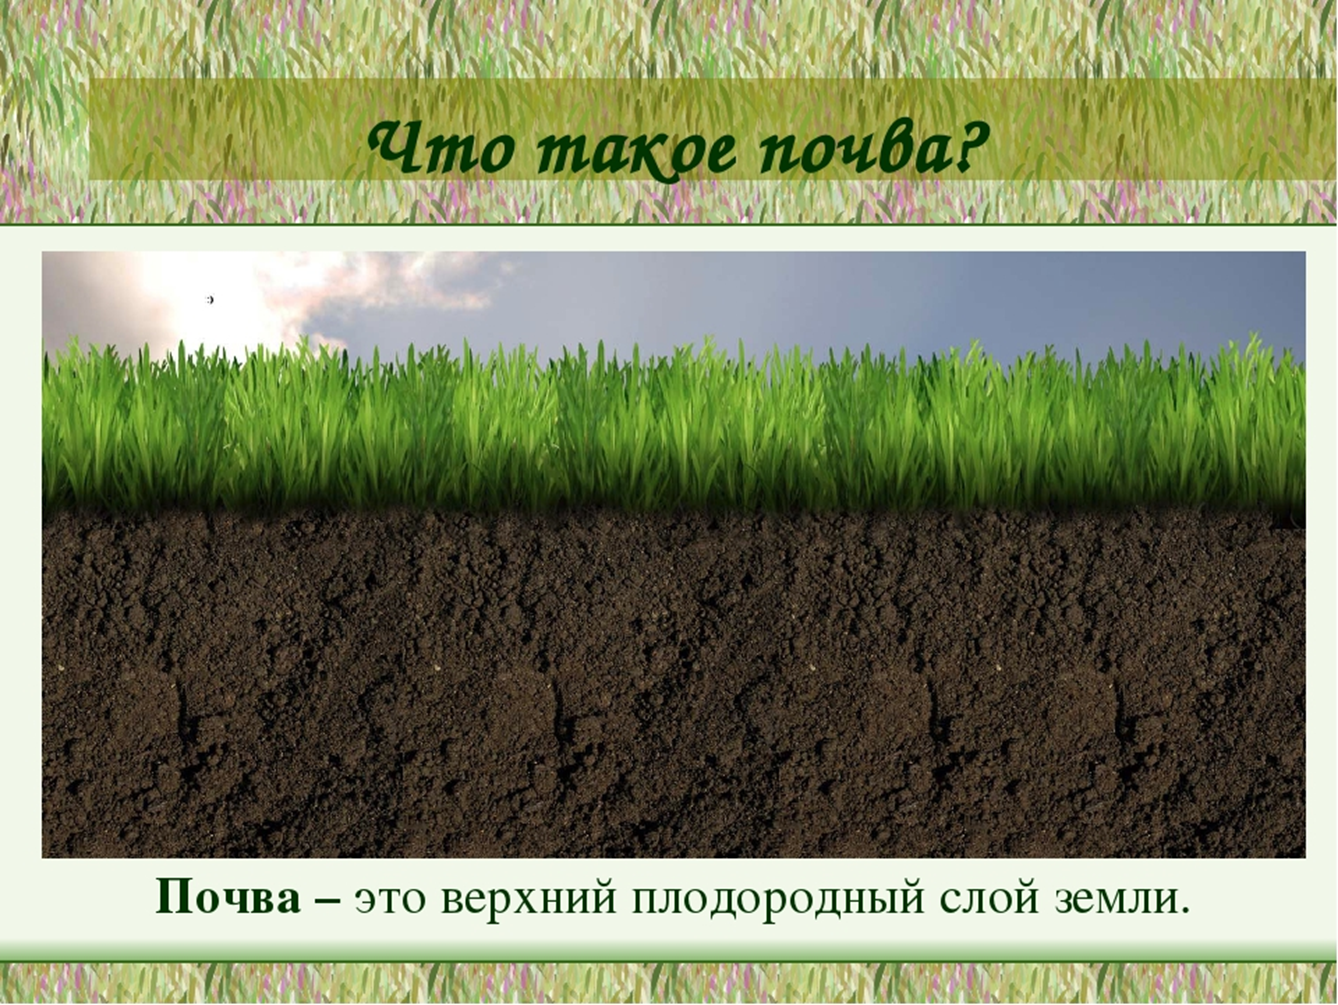 Какая почва менее плодородна. Почва. Плодородный слой почвы. Почвенный слой земли. Почва плодородный слой земли.